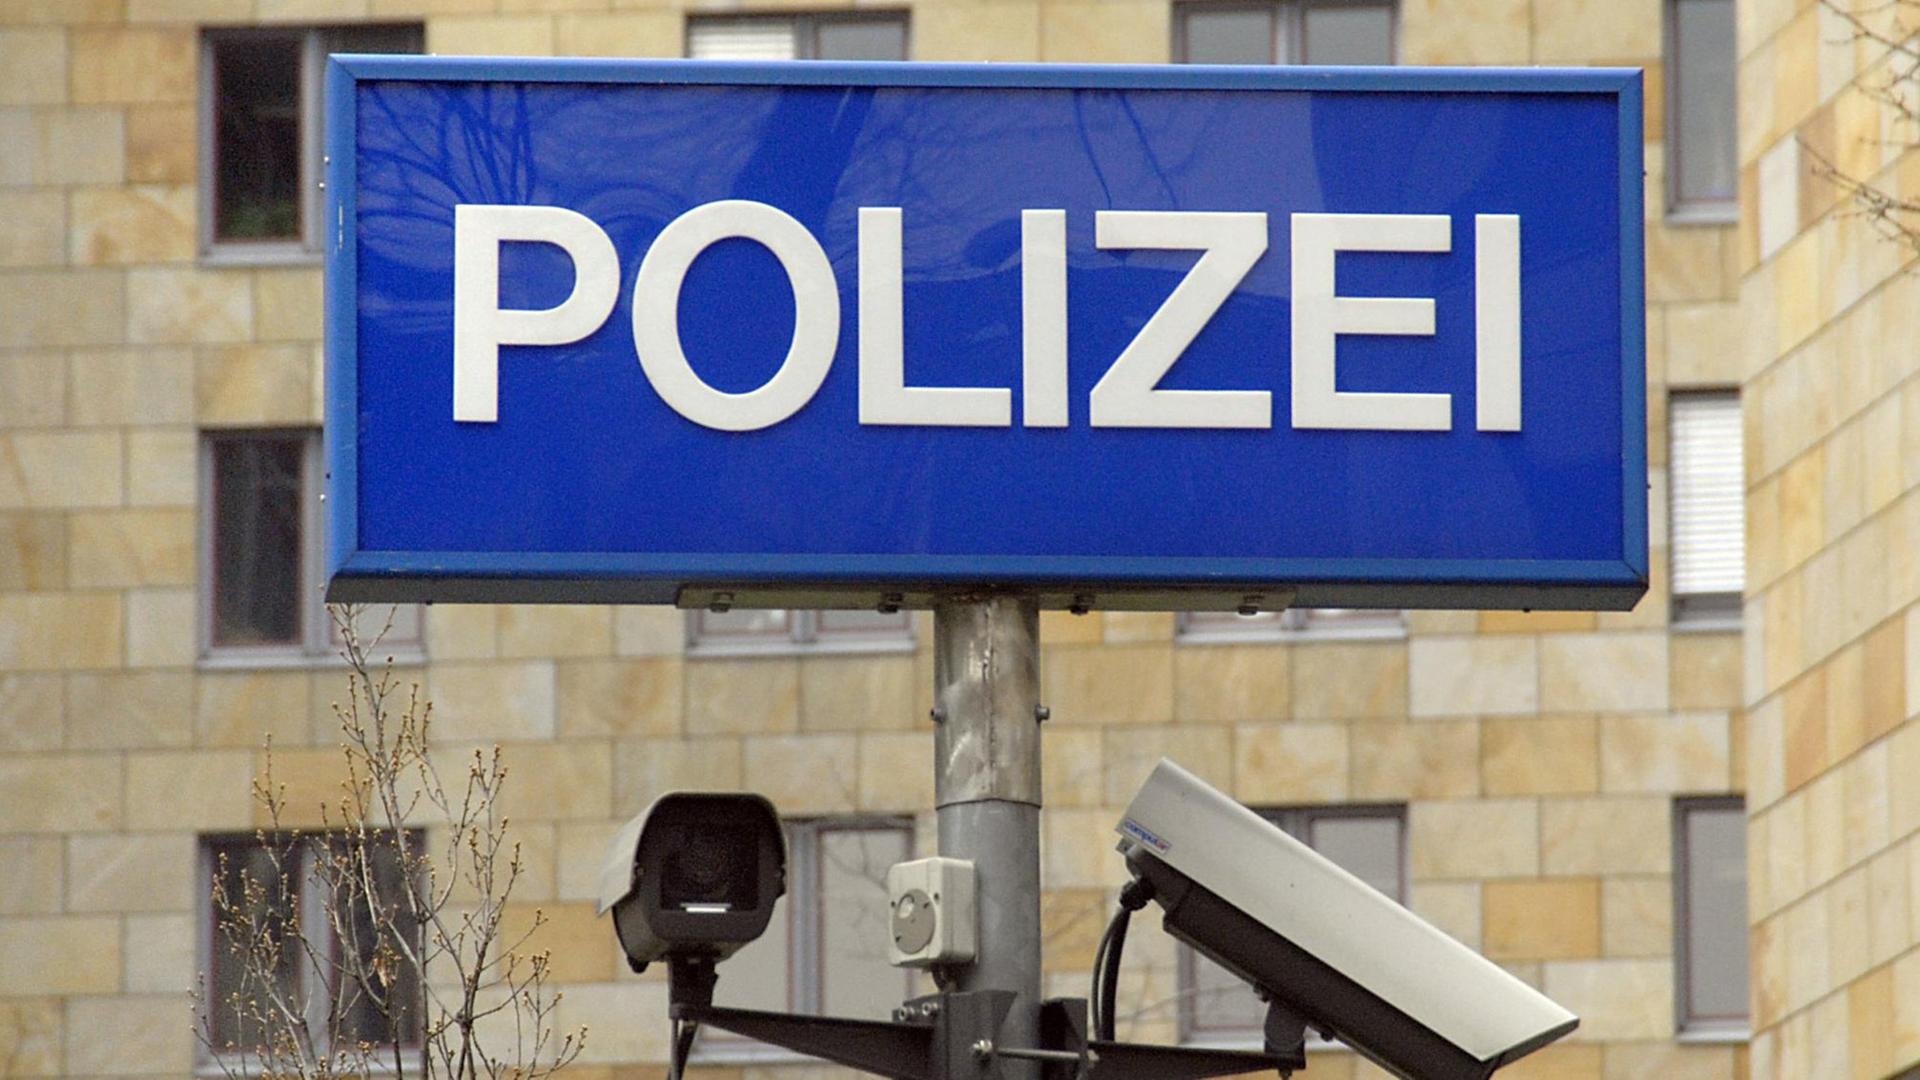 Zwei Überwachungskameras an einem Mast unter einer Leuchthinweistafel mit dem Schriftzug "Polizei" im Behördenzentrum Frankfurt am Main